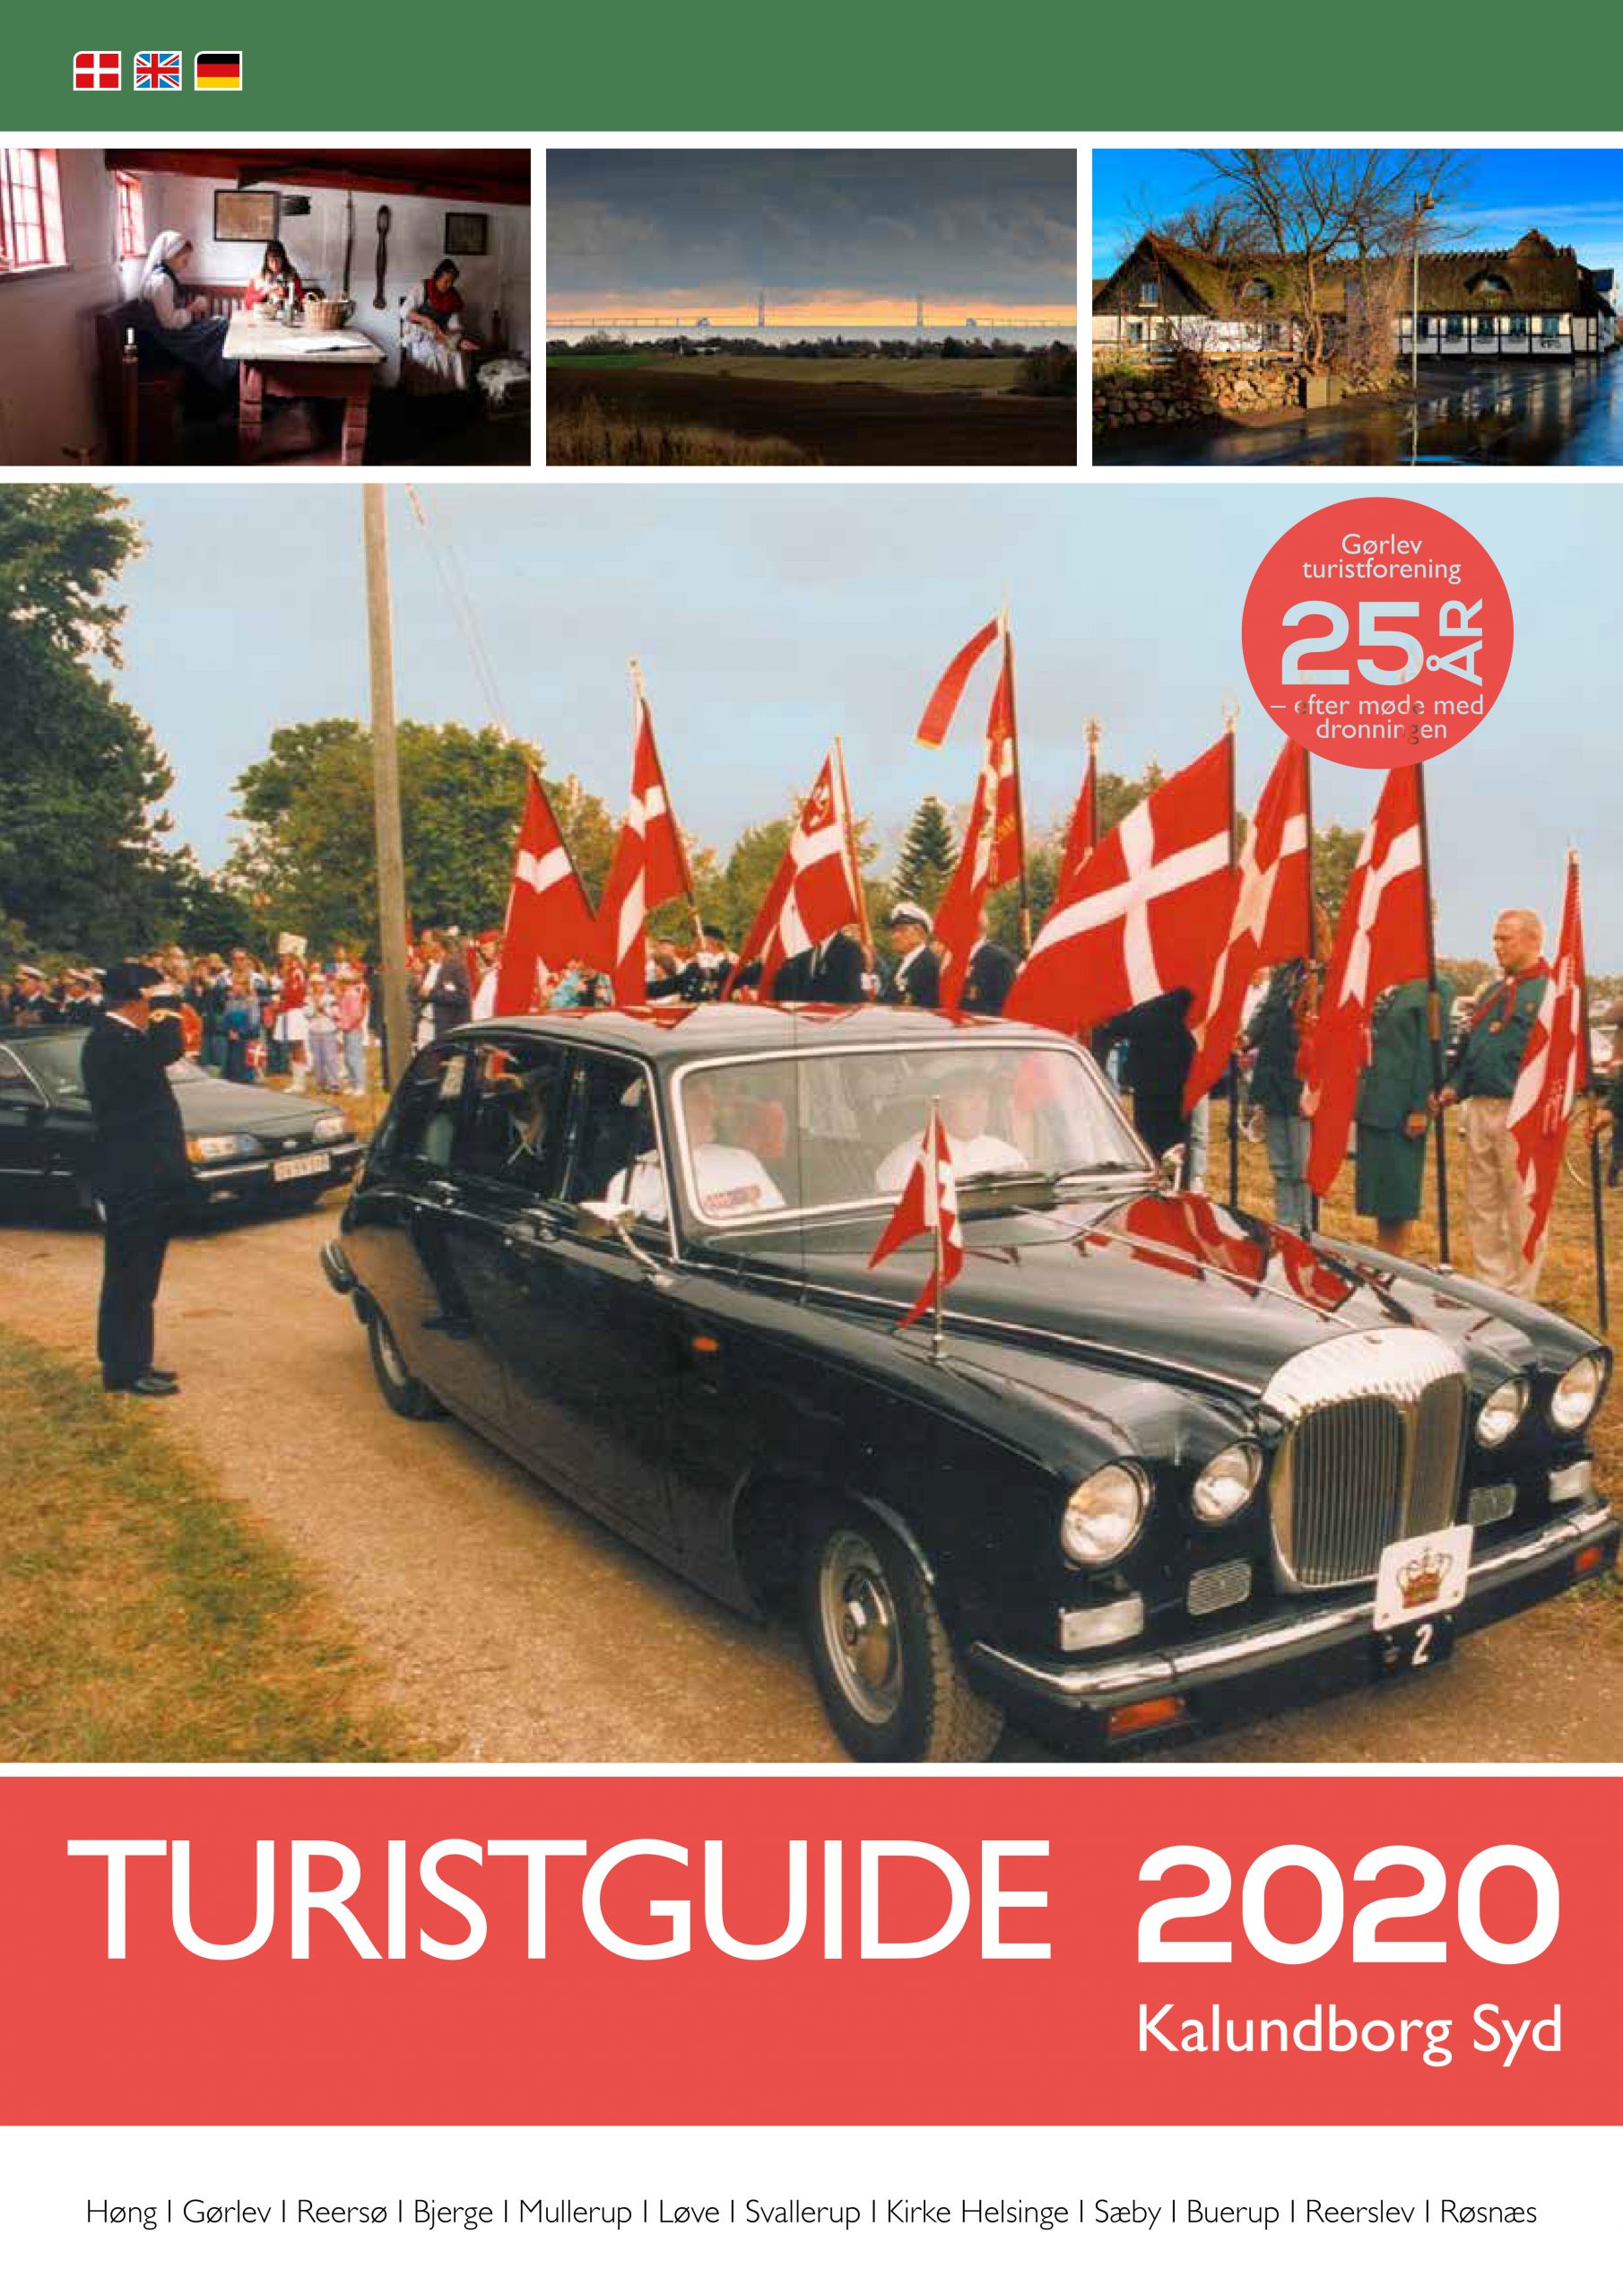 Gørlev Turistguide 2020 _WEB-1 Forside til webside